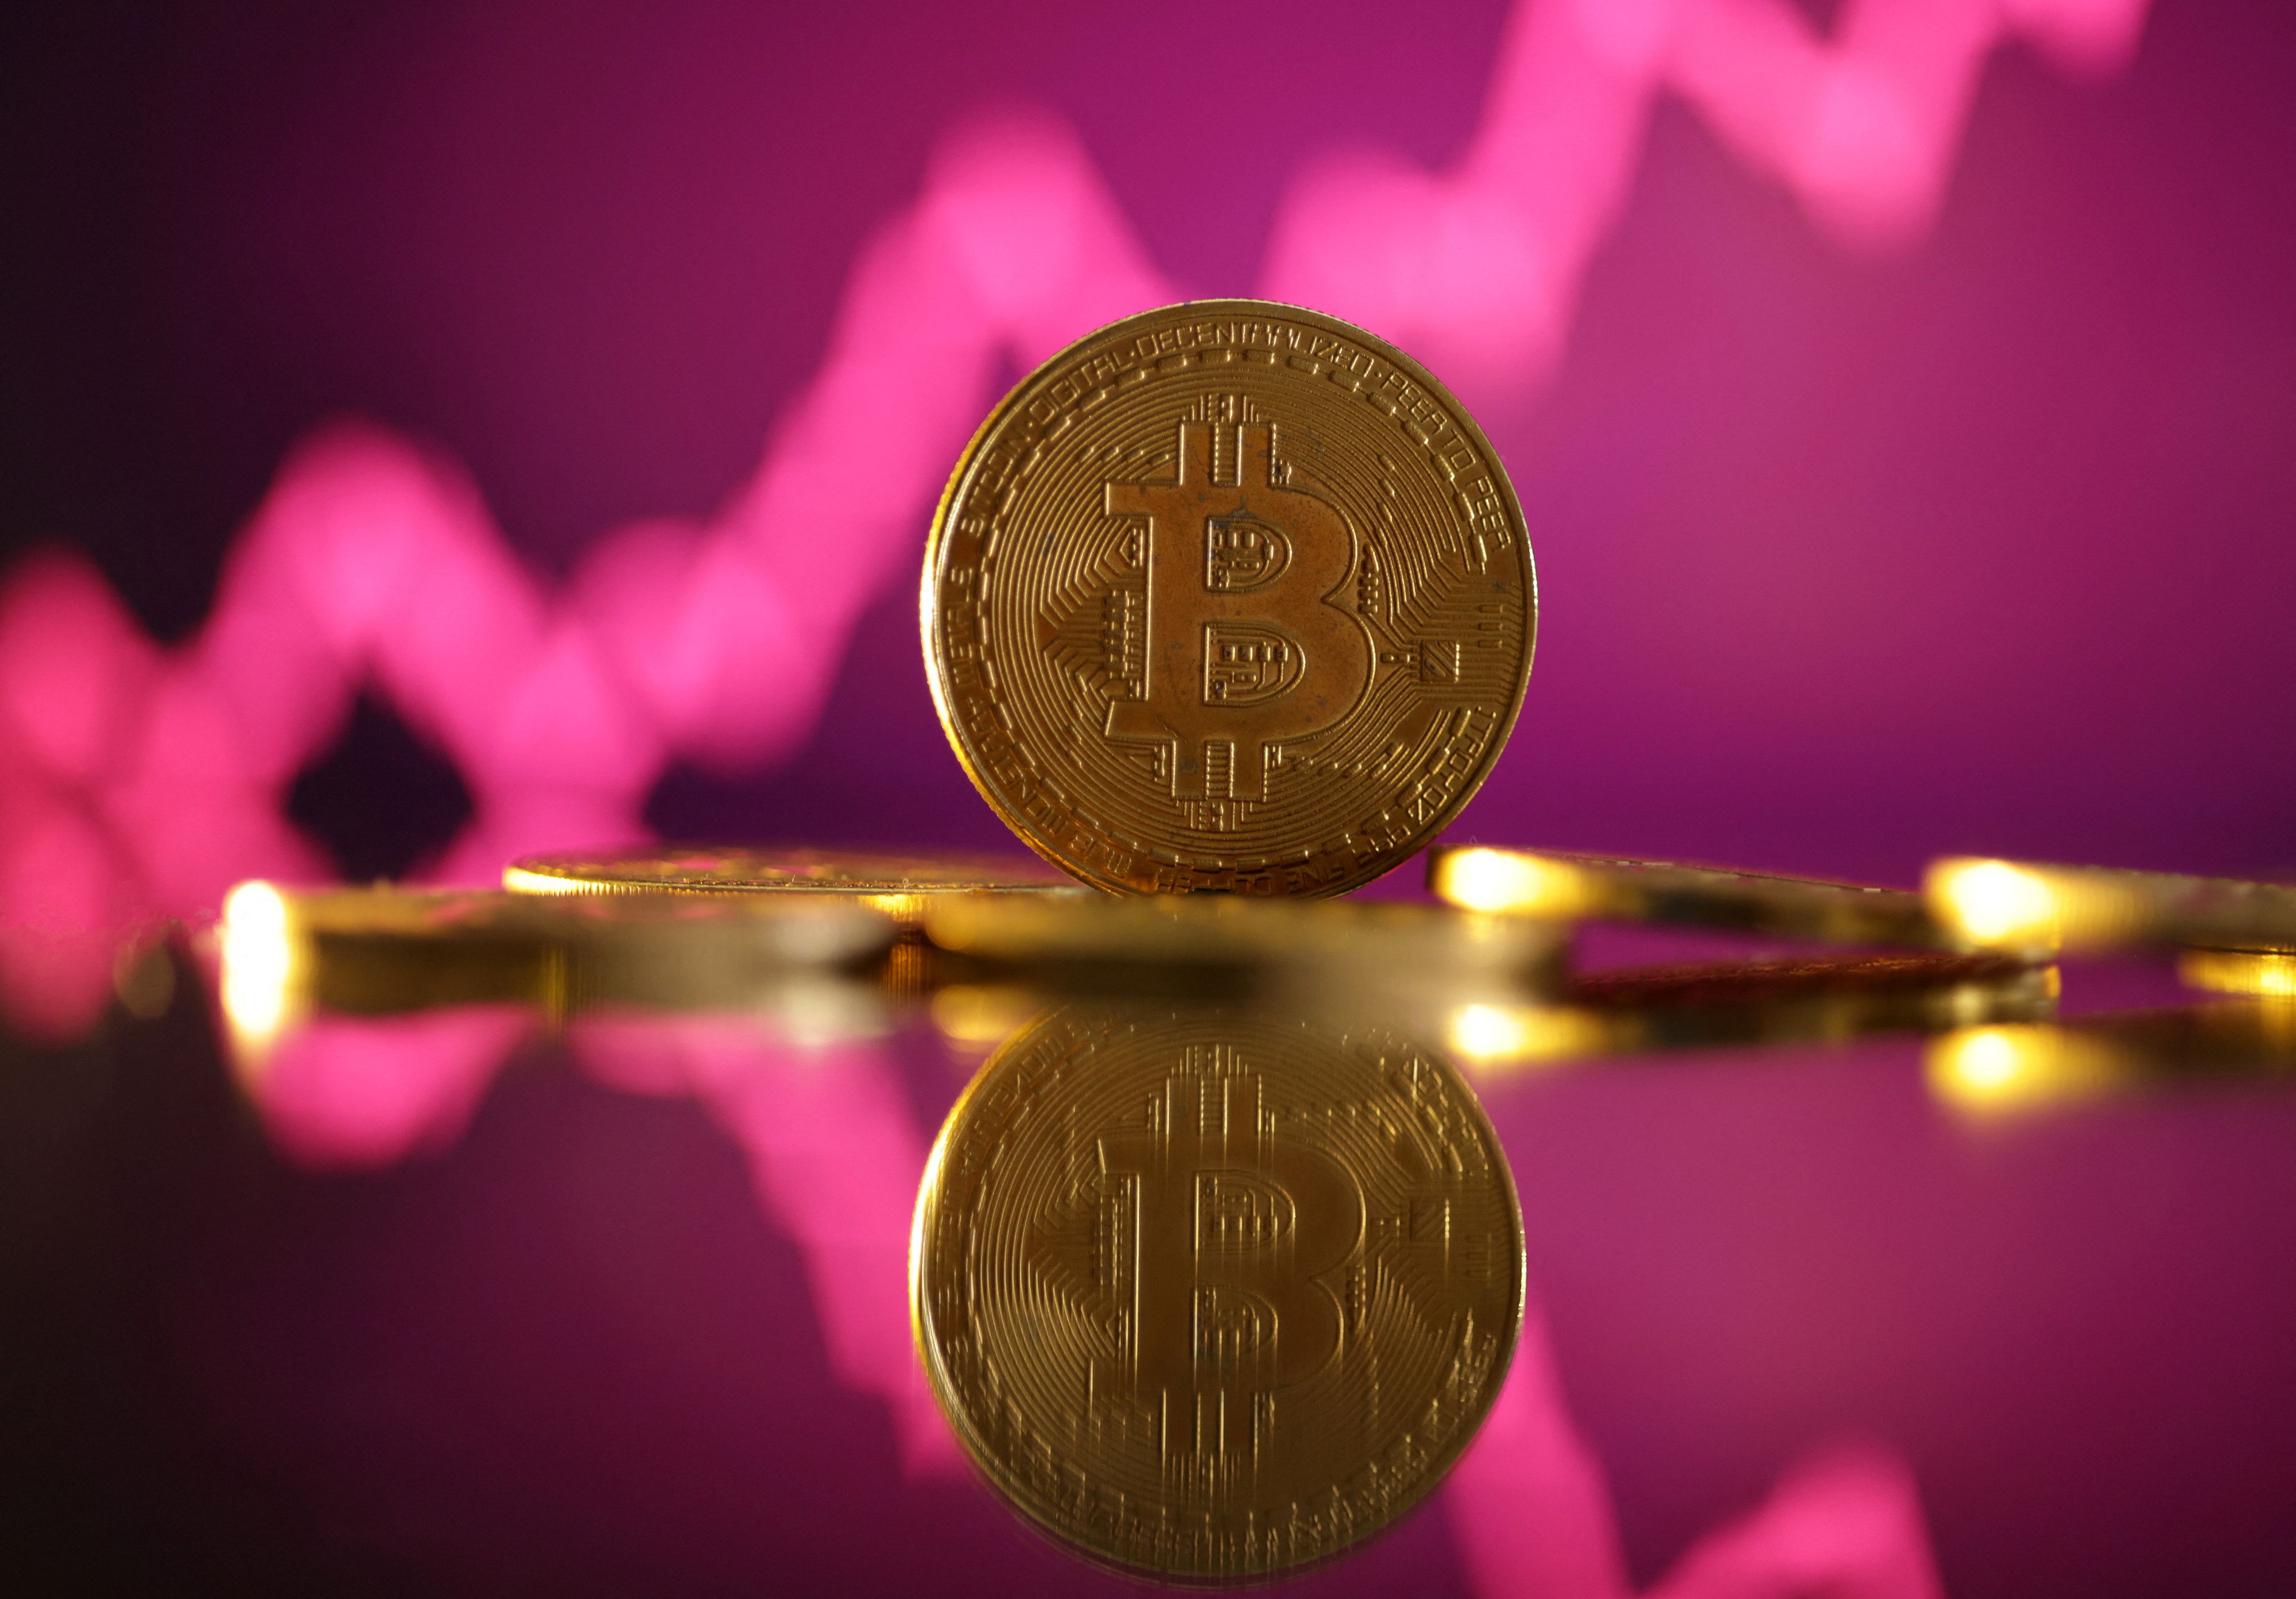 bitcoin sube más de 60% y llega a nuevos máximos históricos: ¿momento de vender o seguir comprando?